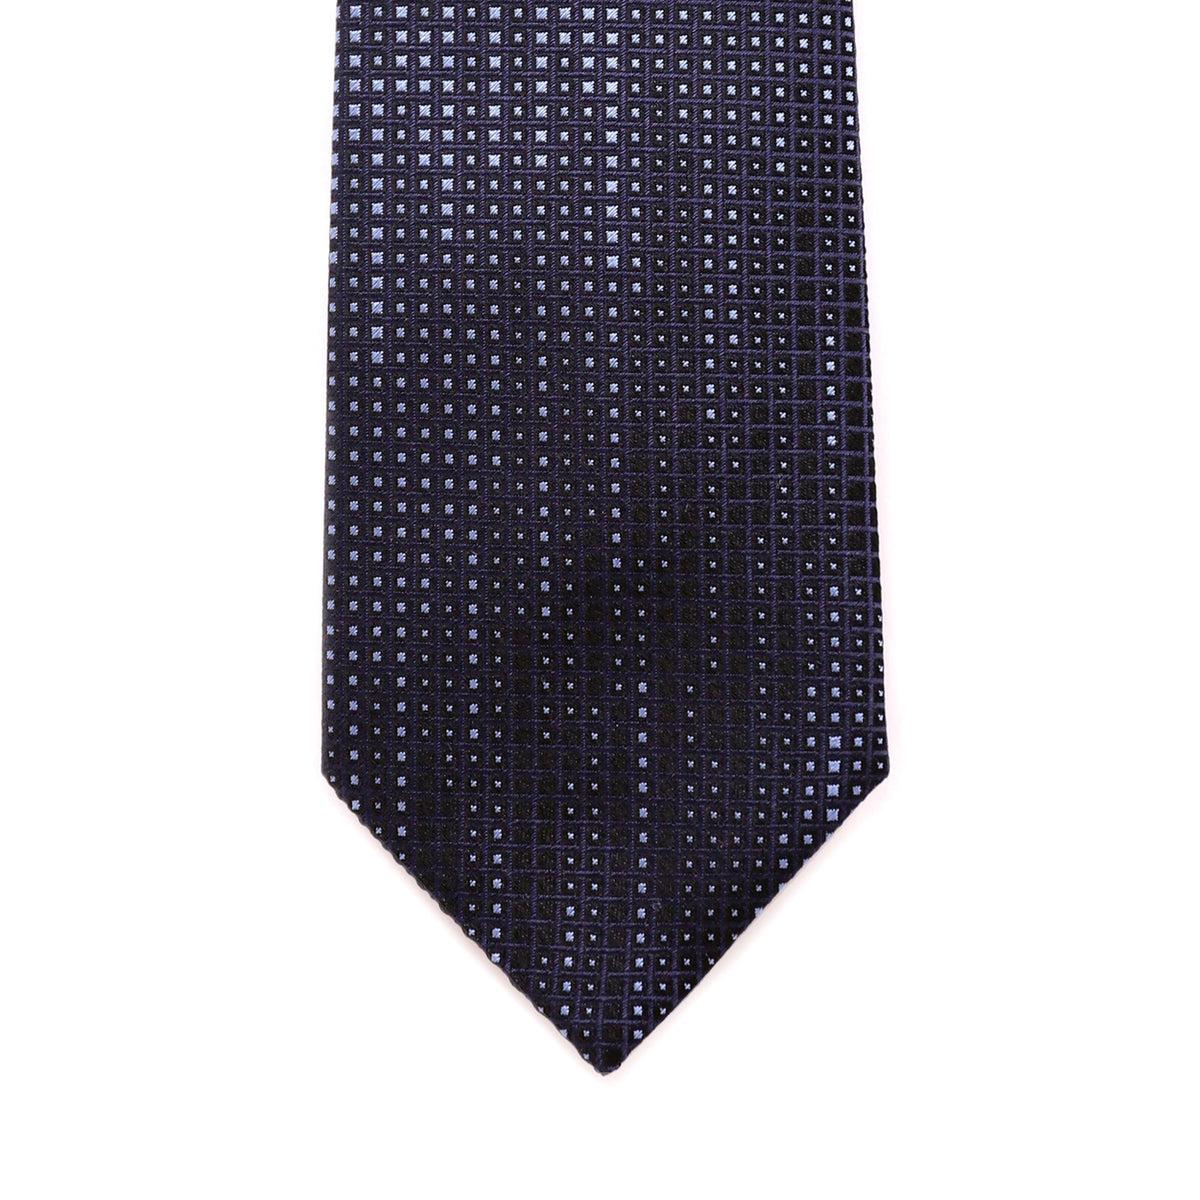 ERMENEGILDO ZEGNA Silk Tie monogram 21-Cufflinks.com.sg | Neckties.com.sg